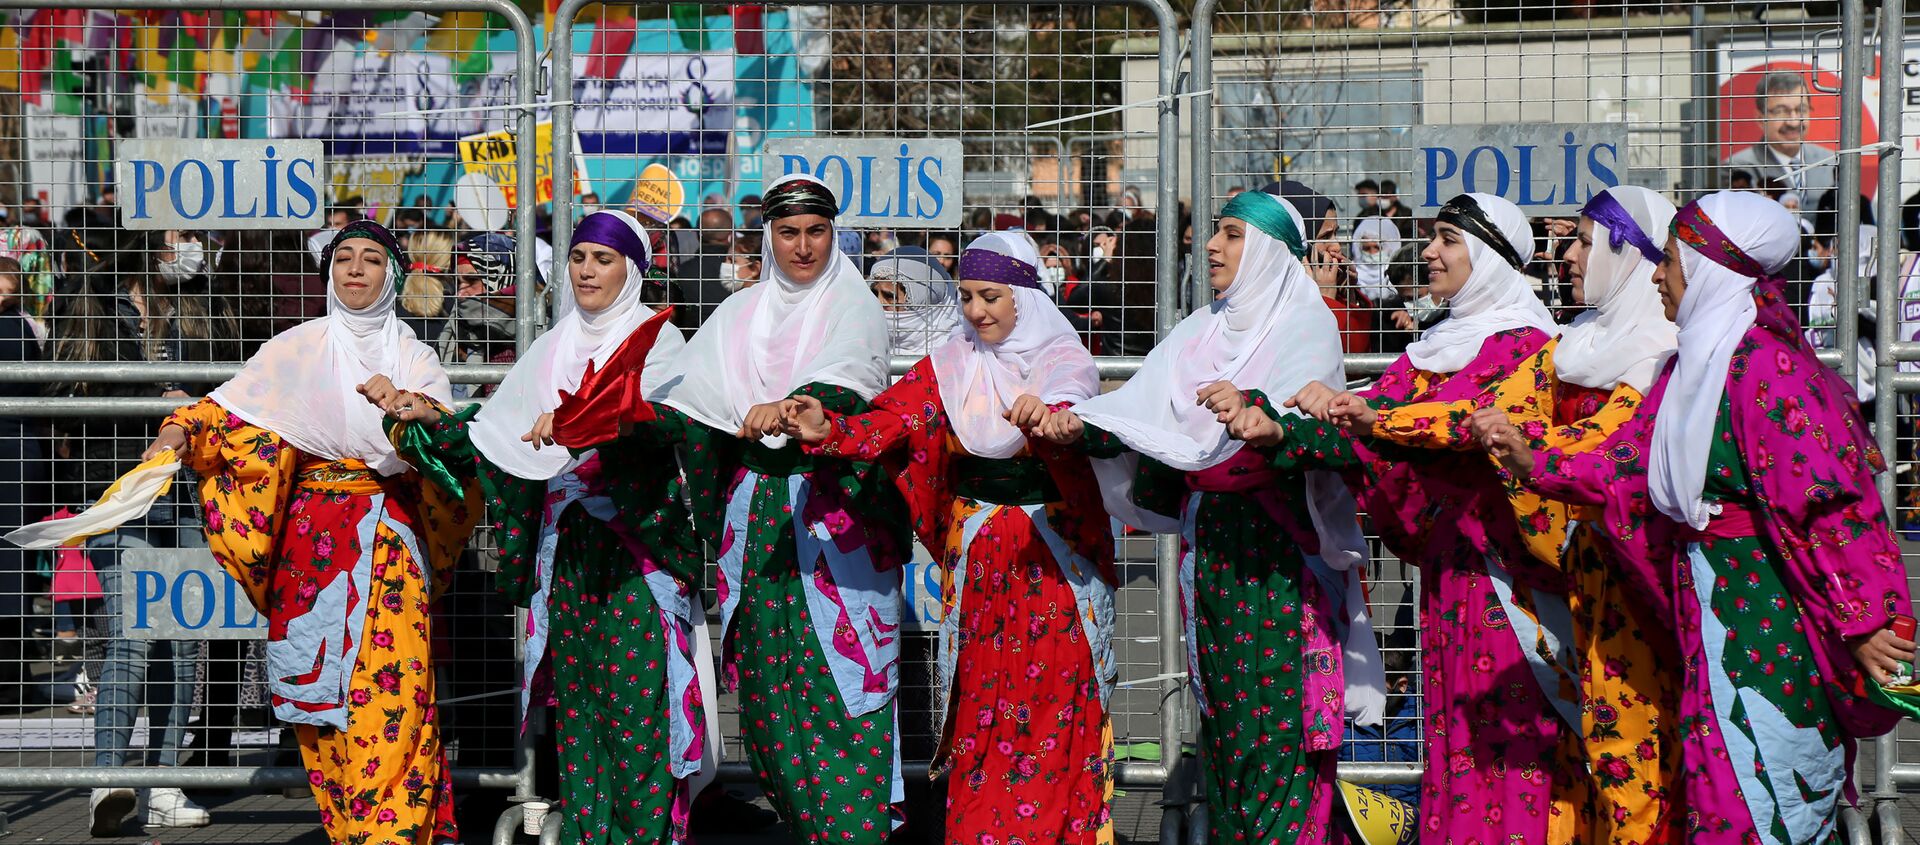 DBP Eş Genel Başkanı Saliha Aydeniz, “Ne yaparlarsa yapsınlar, ne kadar zulüm etseler de ne kadar ötekileştirseler de yok saysalar da bugün kadınlar alanlarda özgürlüğü, tecride karşı direnişi, bağımsızlığı, barışı, demokrasiyi haykırıyorlar. Bütün dünyada kadınlar direniyor, Kürdistan’da, Ortadoğu’da, Türkiye’de kadınlar direniyor açıklamasını yaptı. - Sputnik Türkiye, 1920, 08.03.2021